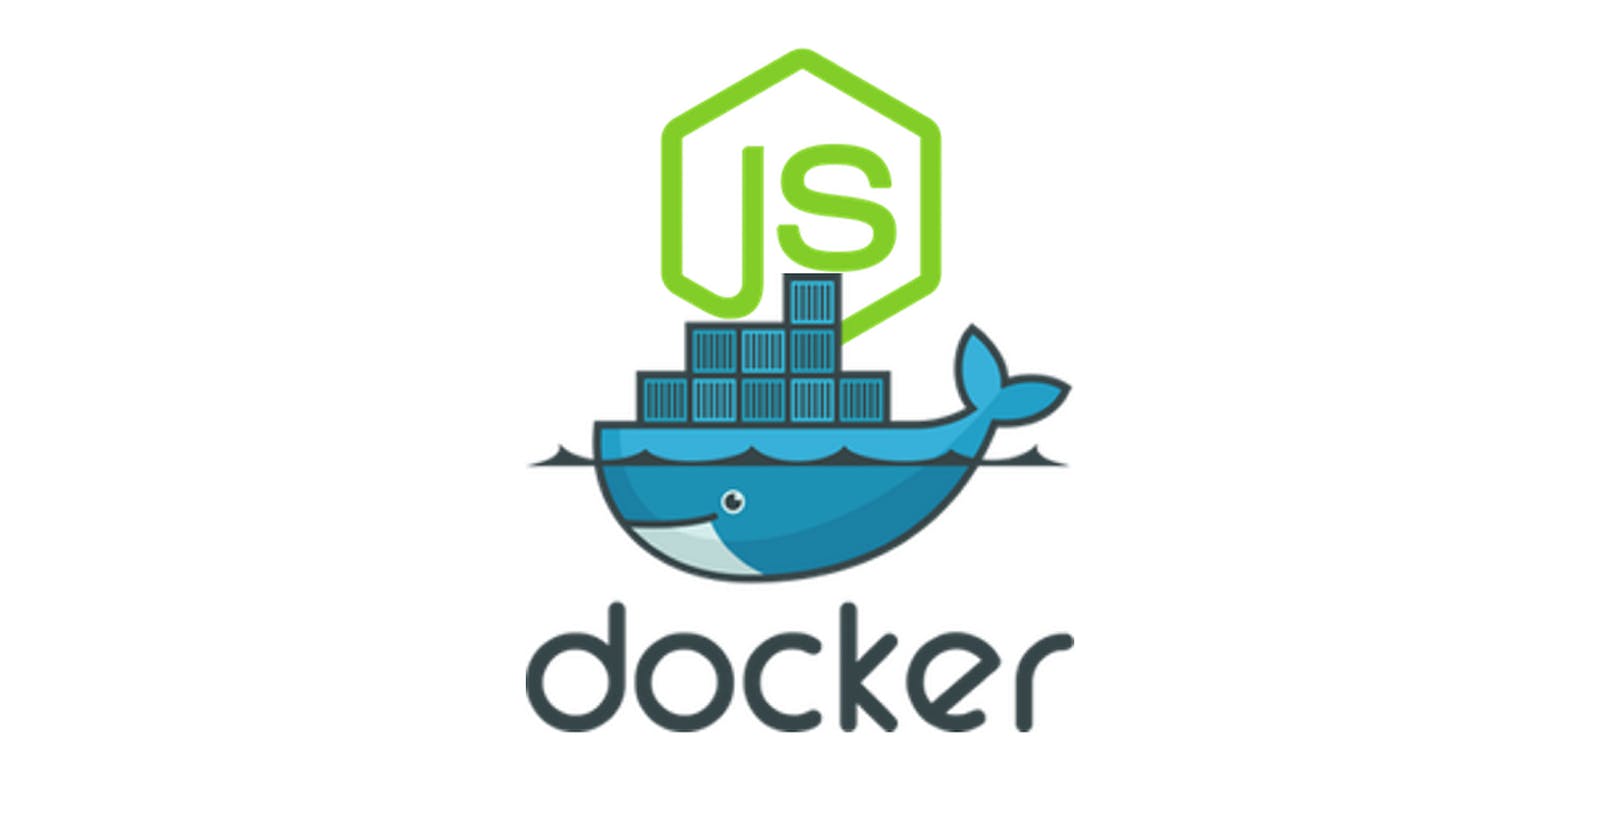 Docker Project for DevOps Engineers